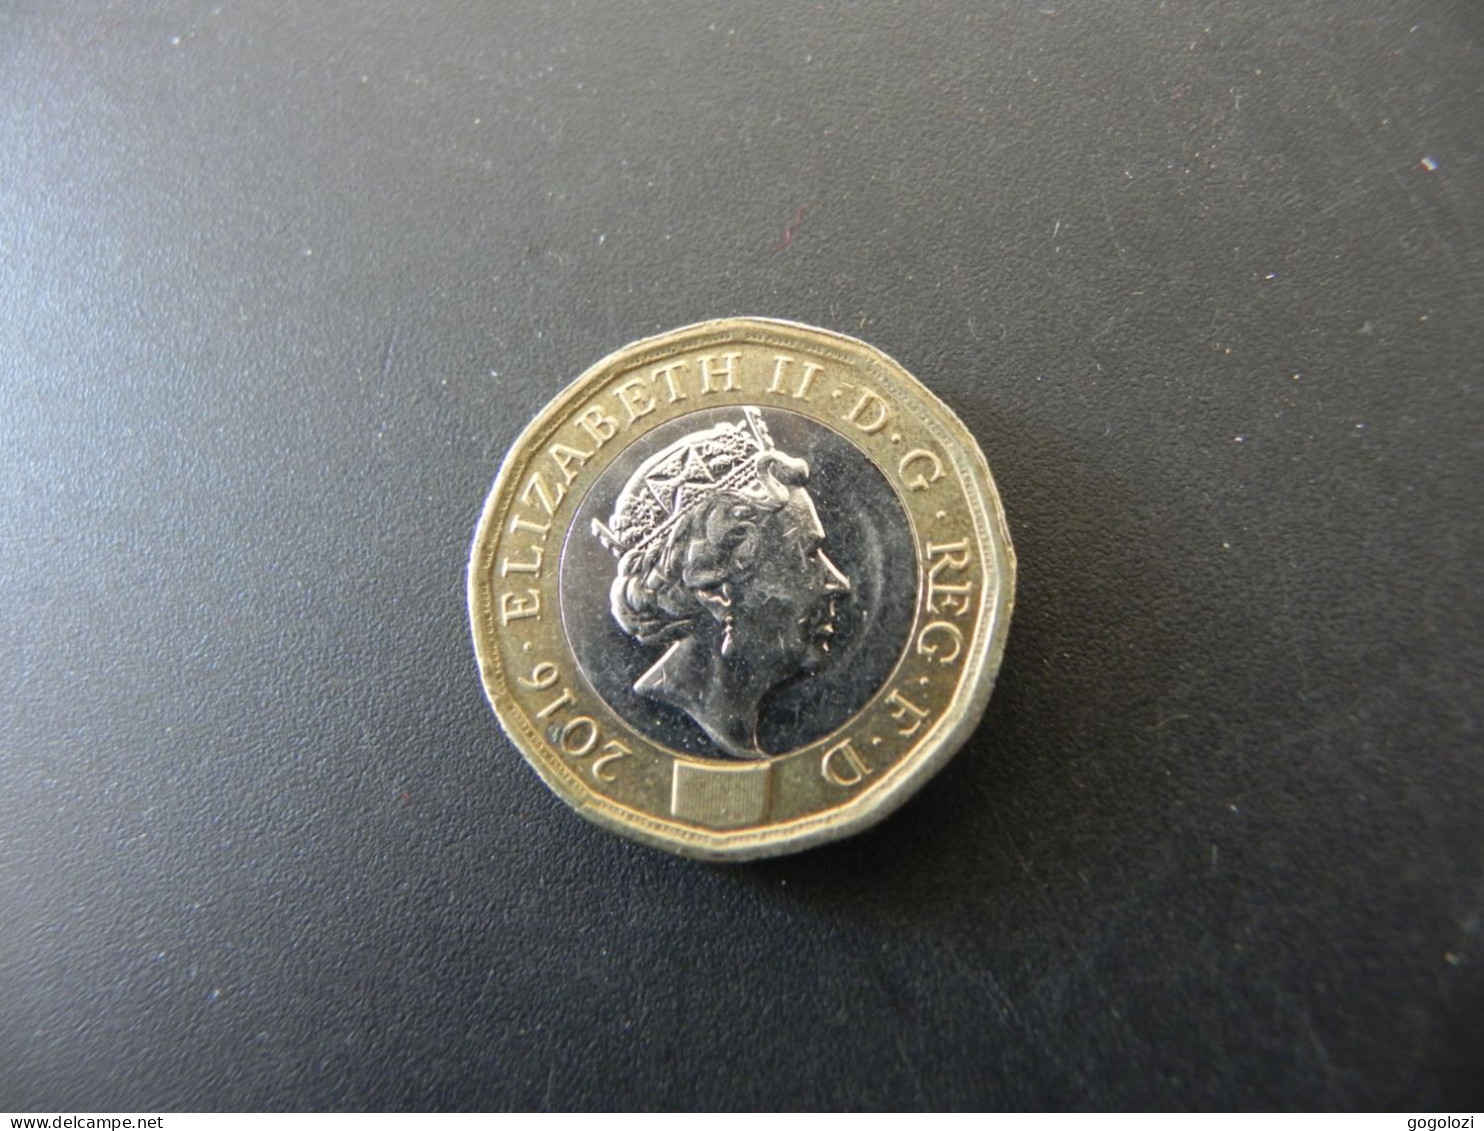 Great Britain 1 Pound 2016 - 1 Pond